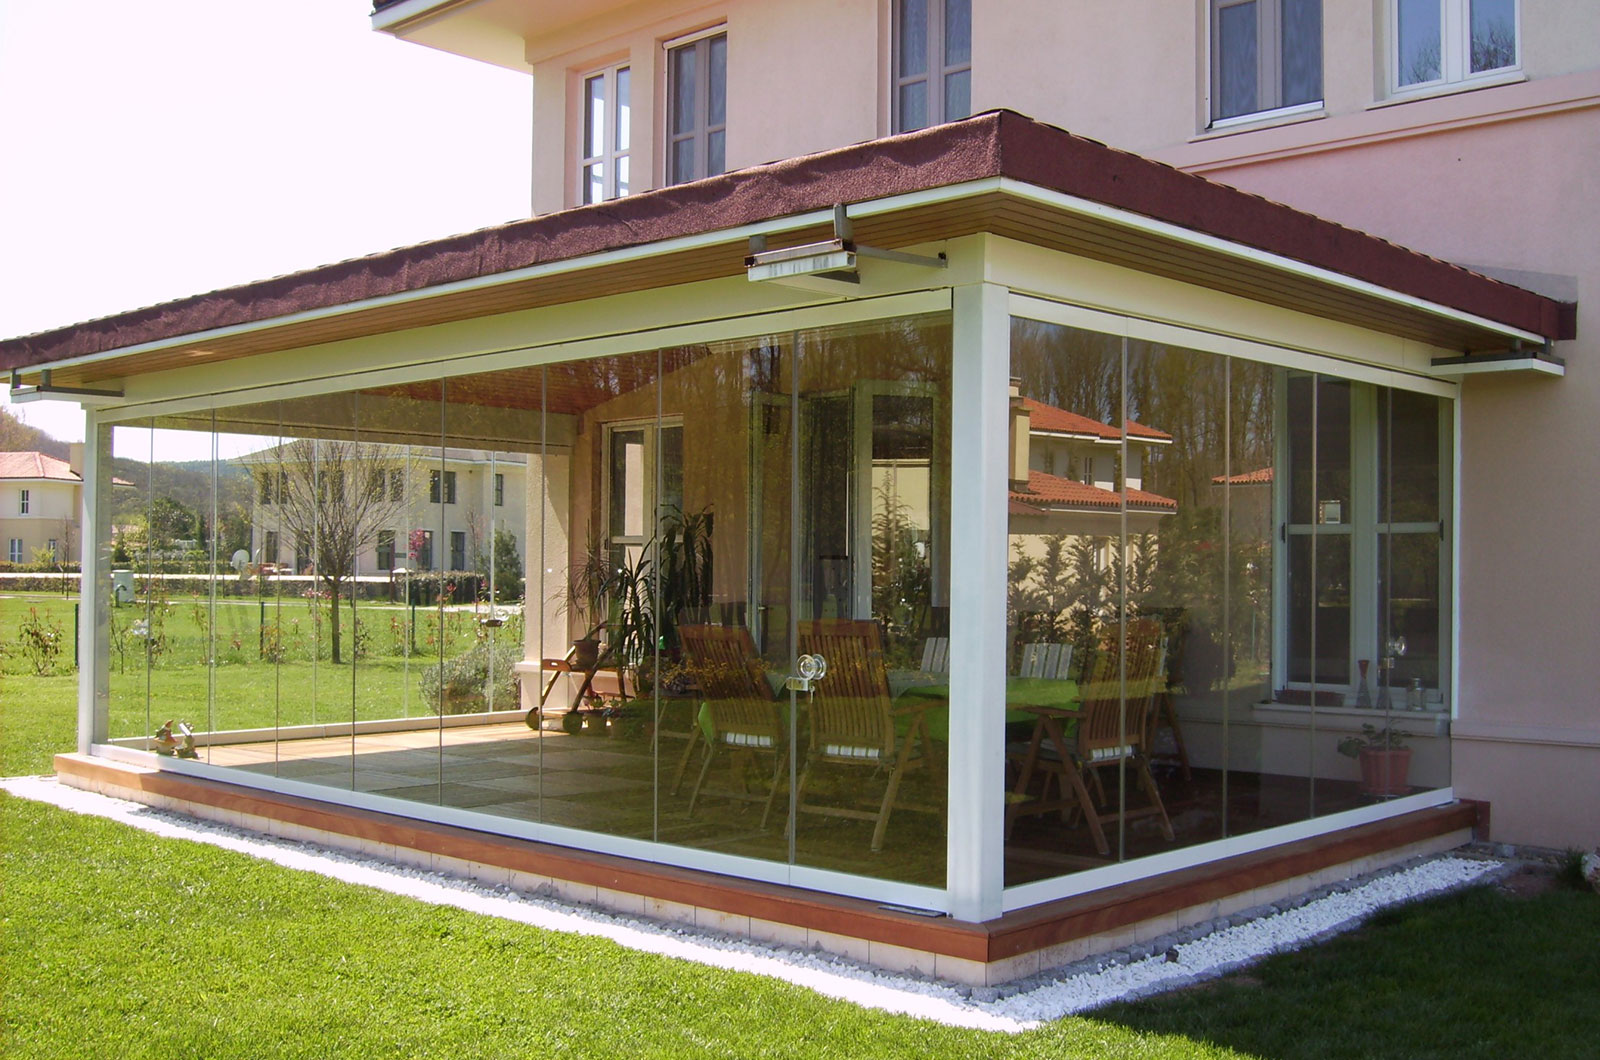 Evinizin ya da villanızın balkonu ya da bahçe girişine, veranda ve pergule montajı hizmeti firmamız tarafından yapılmaktadır.